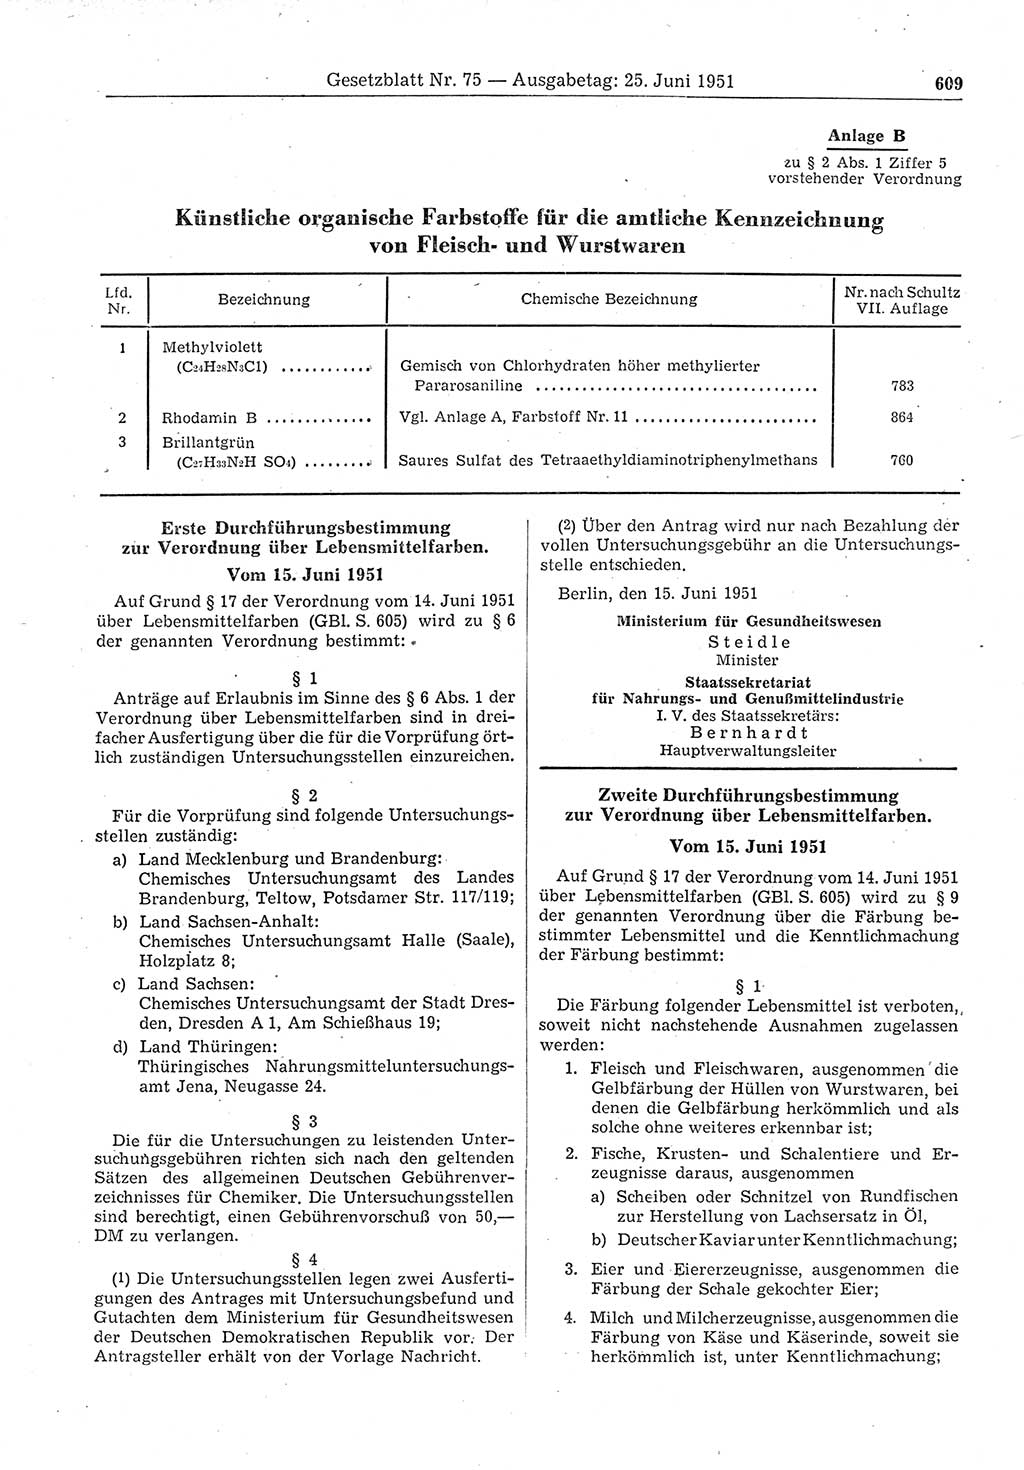 Gesetzblatt (GBl.) der Deutschen Demokratischen Republik (DDR) 1951, Seite 609 (GBl. DDR 1951, S. 609)